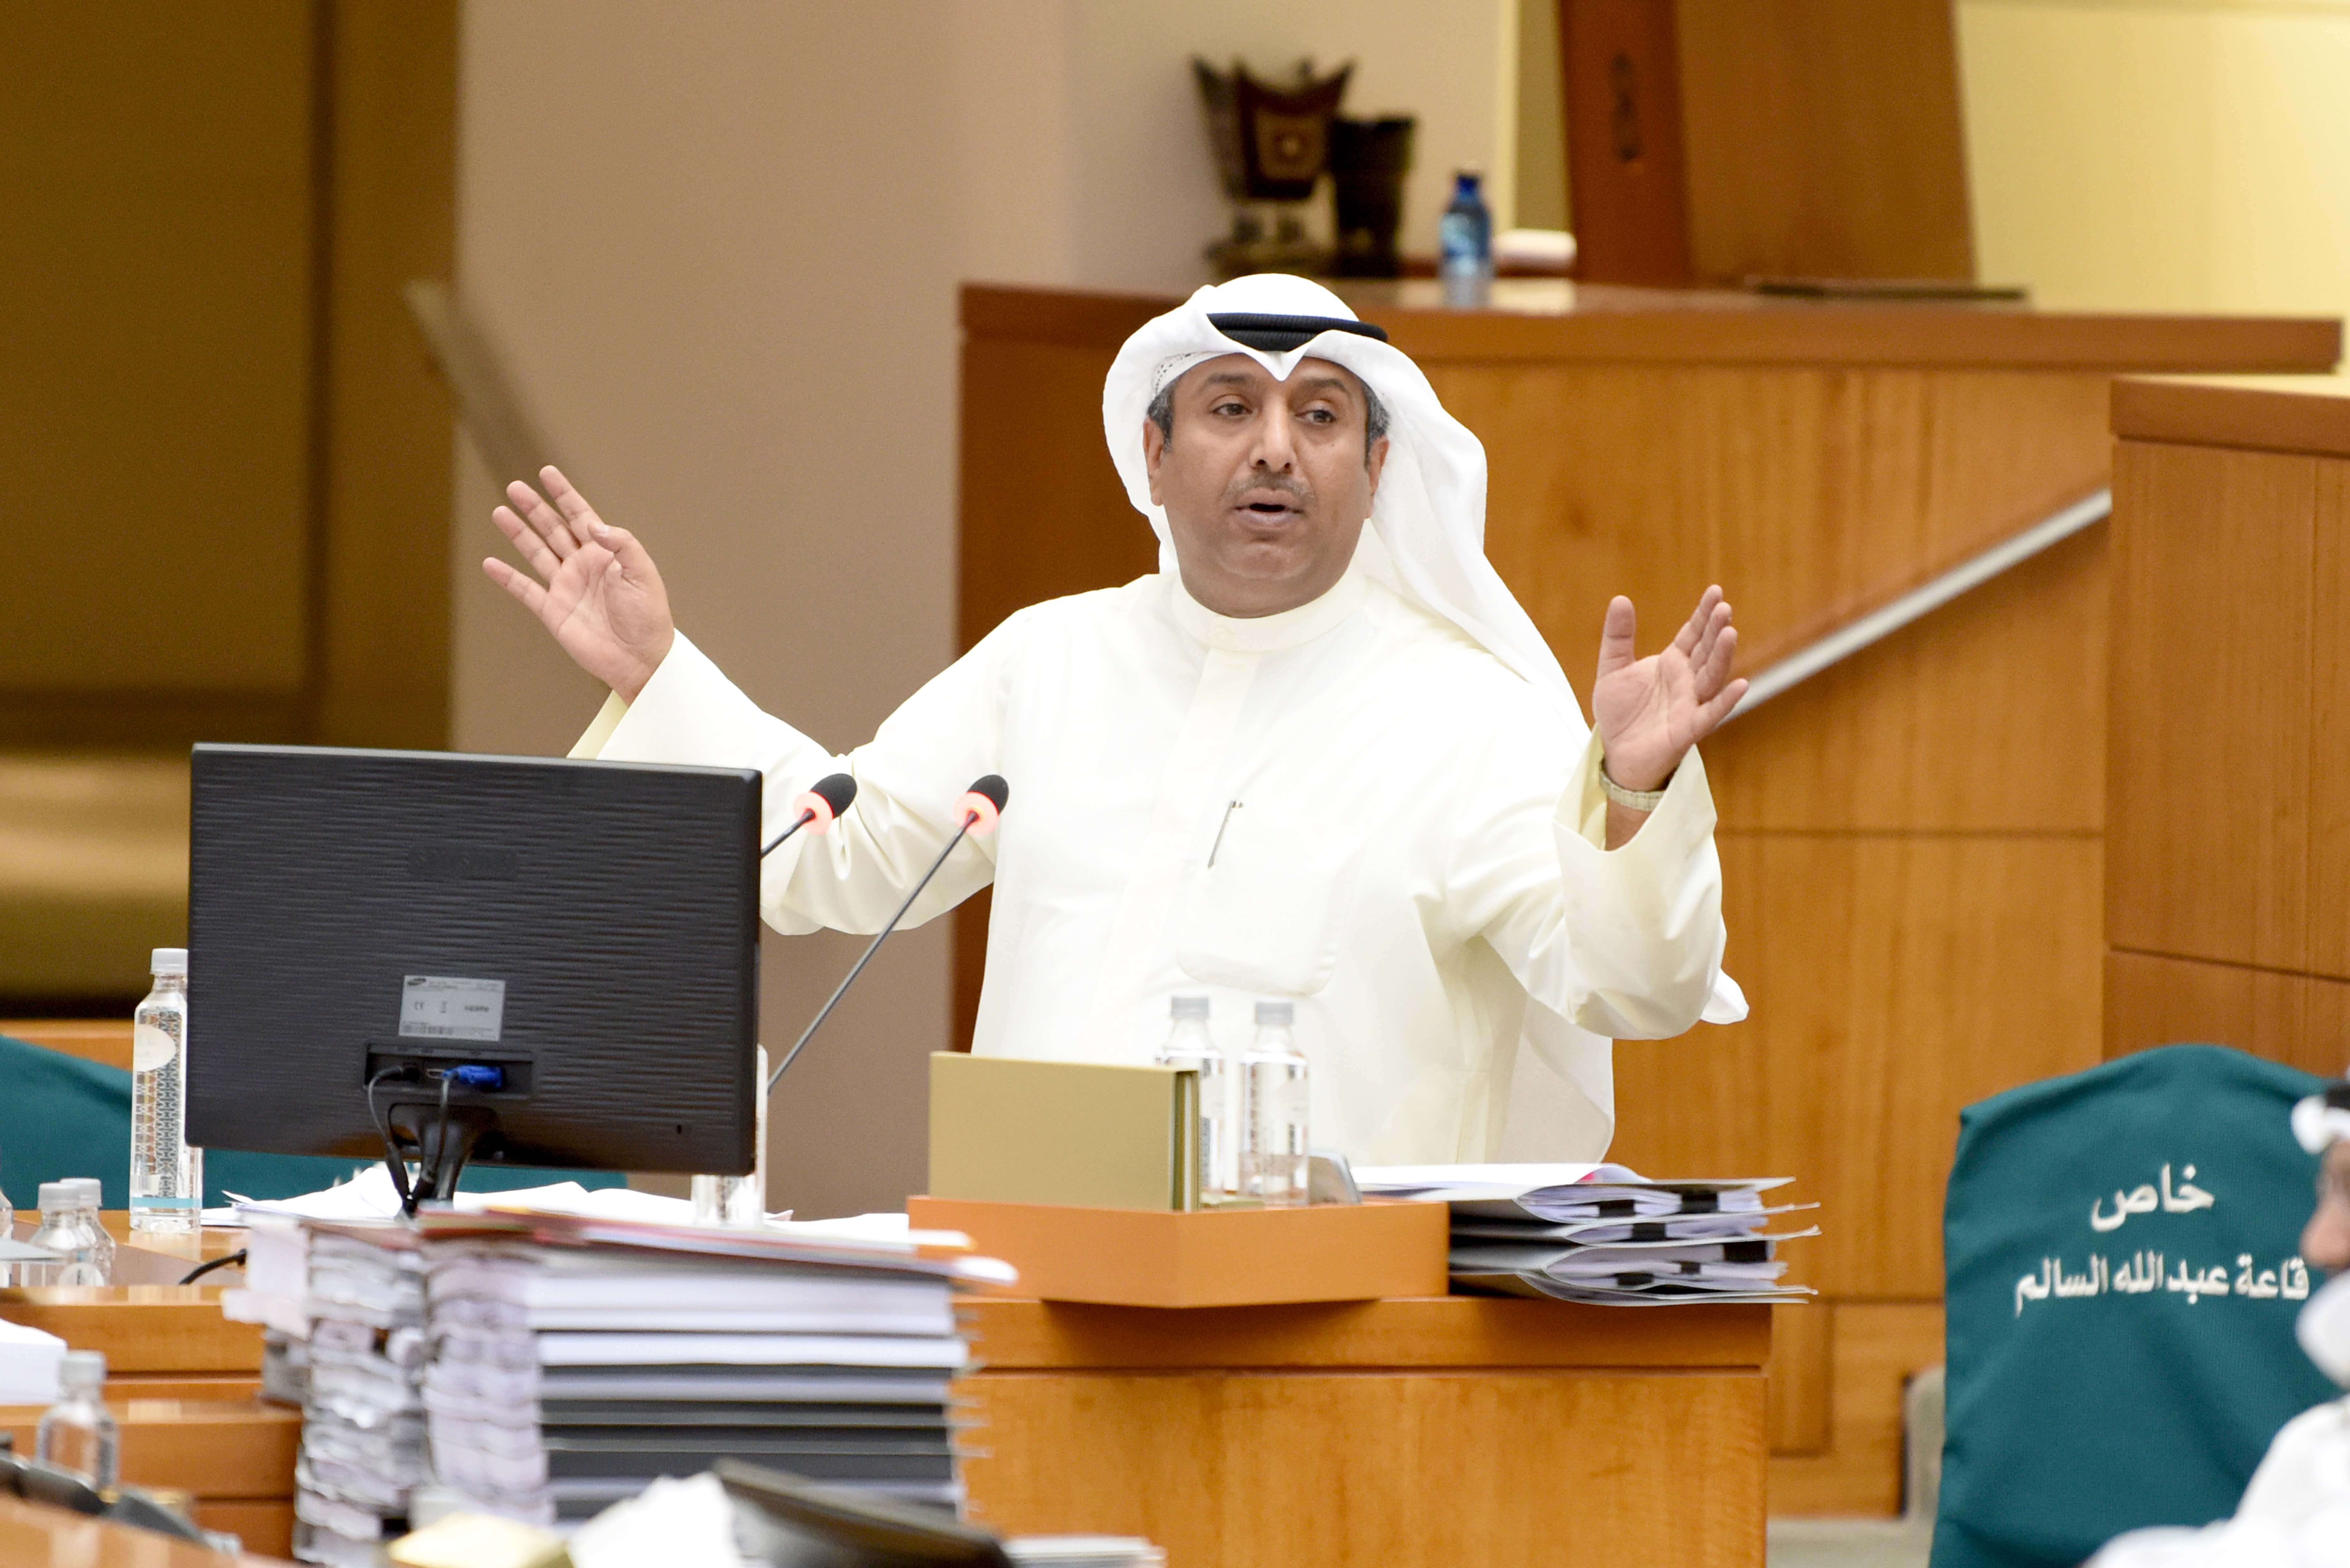 MP Dr. Bader Al-Mulla